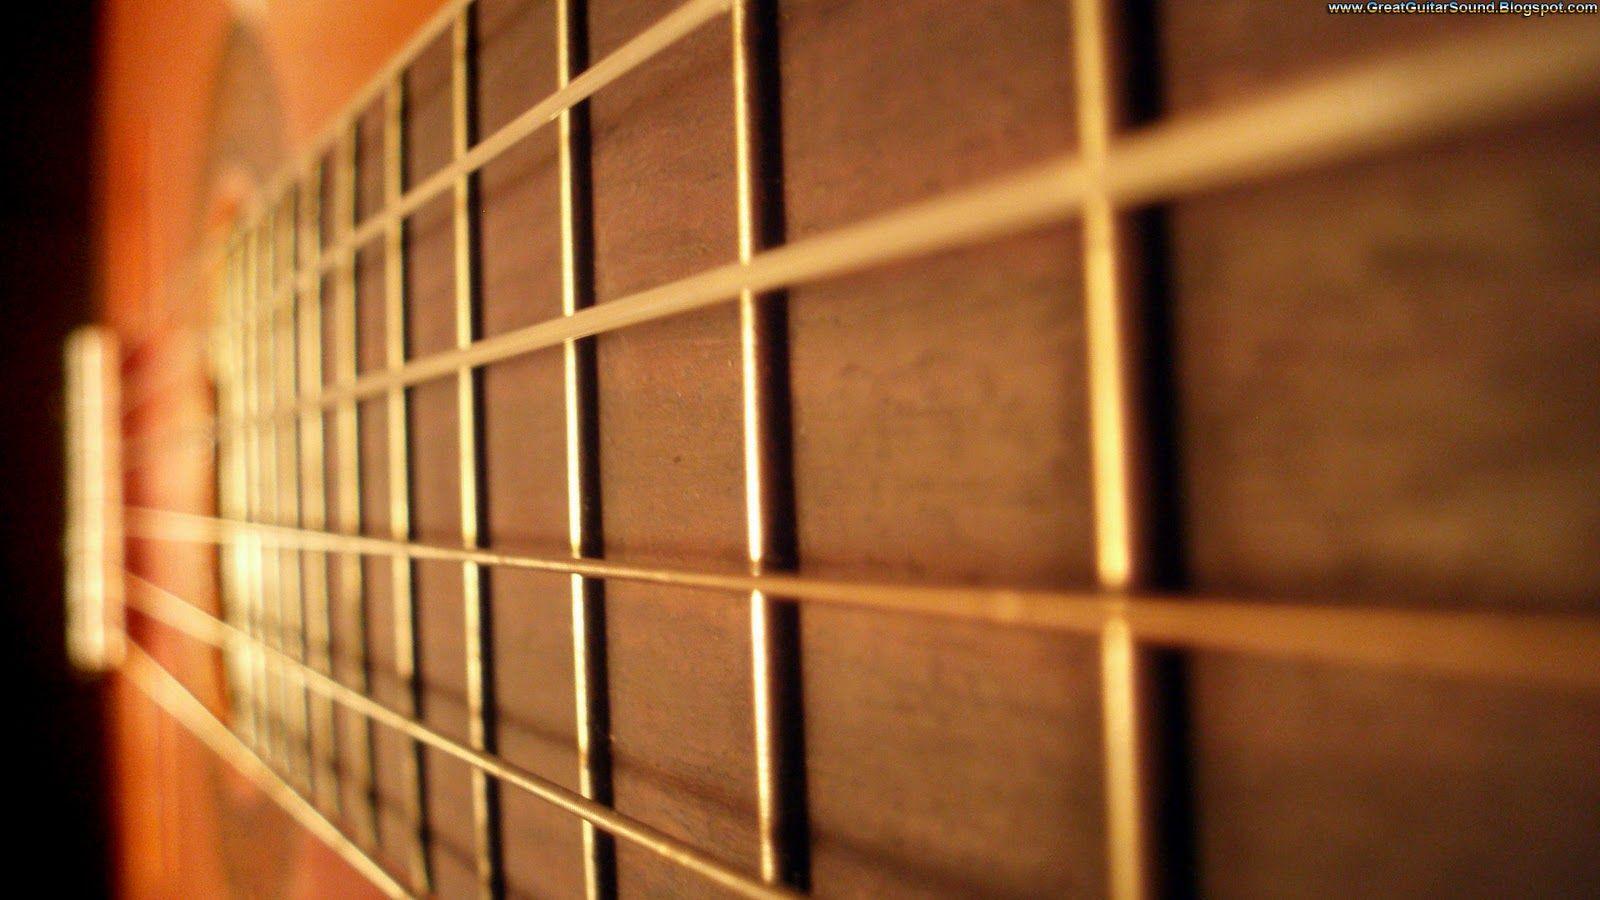 Great Guitar Sound: Guitar Wallpaper C 55 Classical Guitar